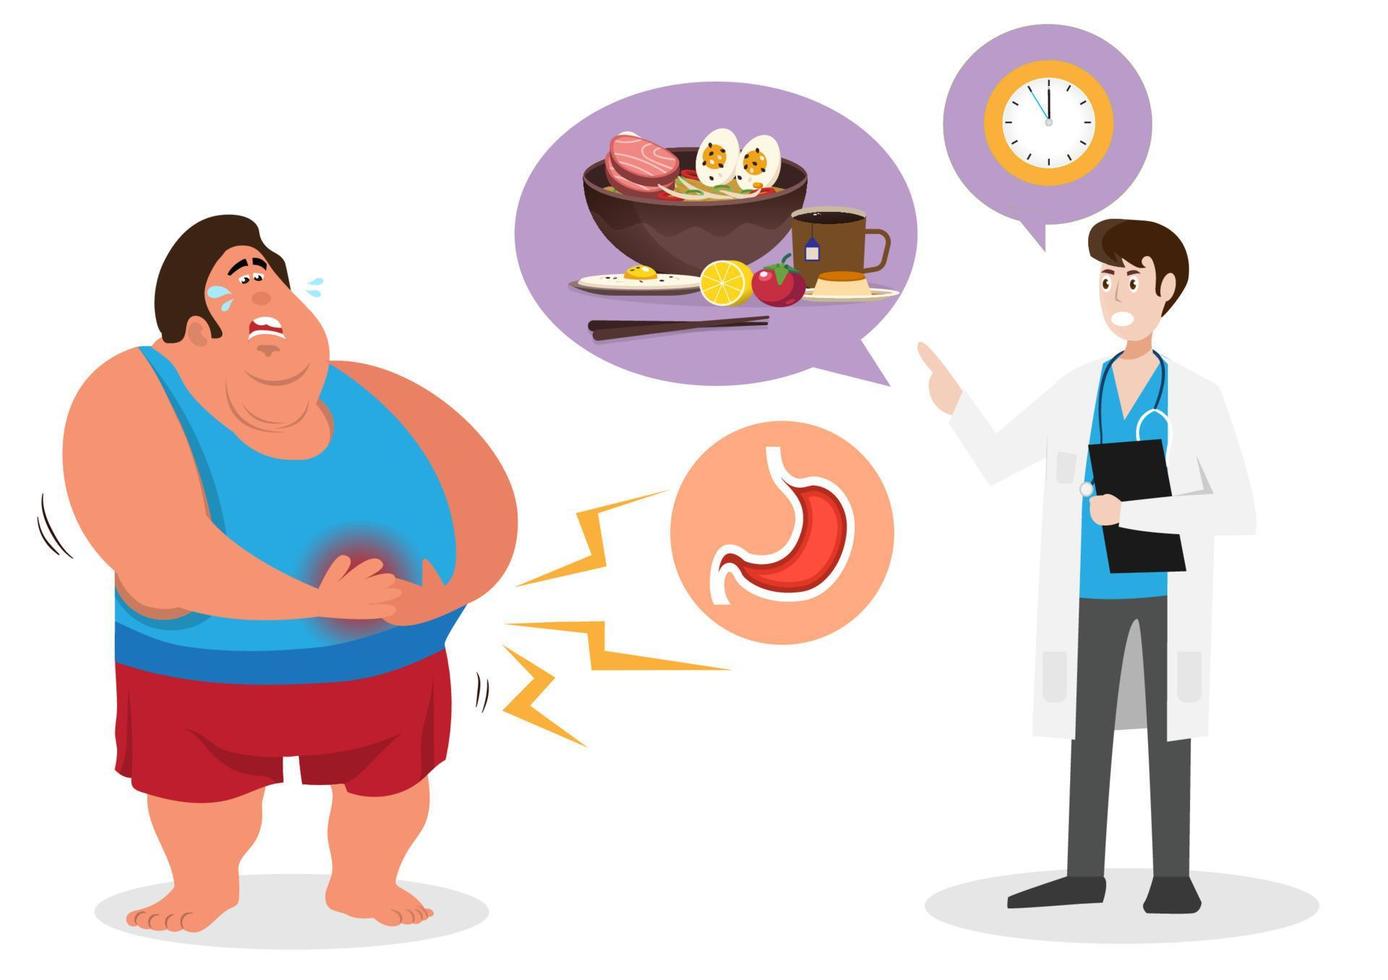 il personaggio maschile grasso ha mal di stomaco, il medico maschio dà consigli alimentari facili da digerire. mangiare in tempo. vettore di illustrazione del fumetto in stile piatto.